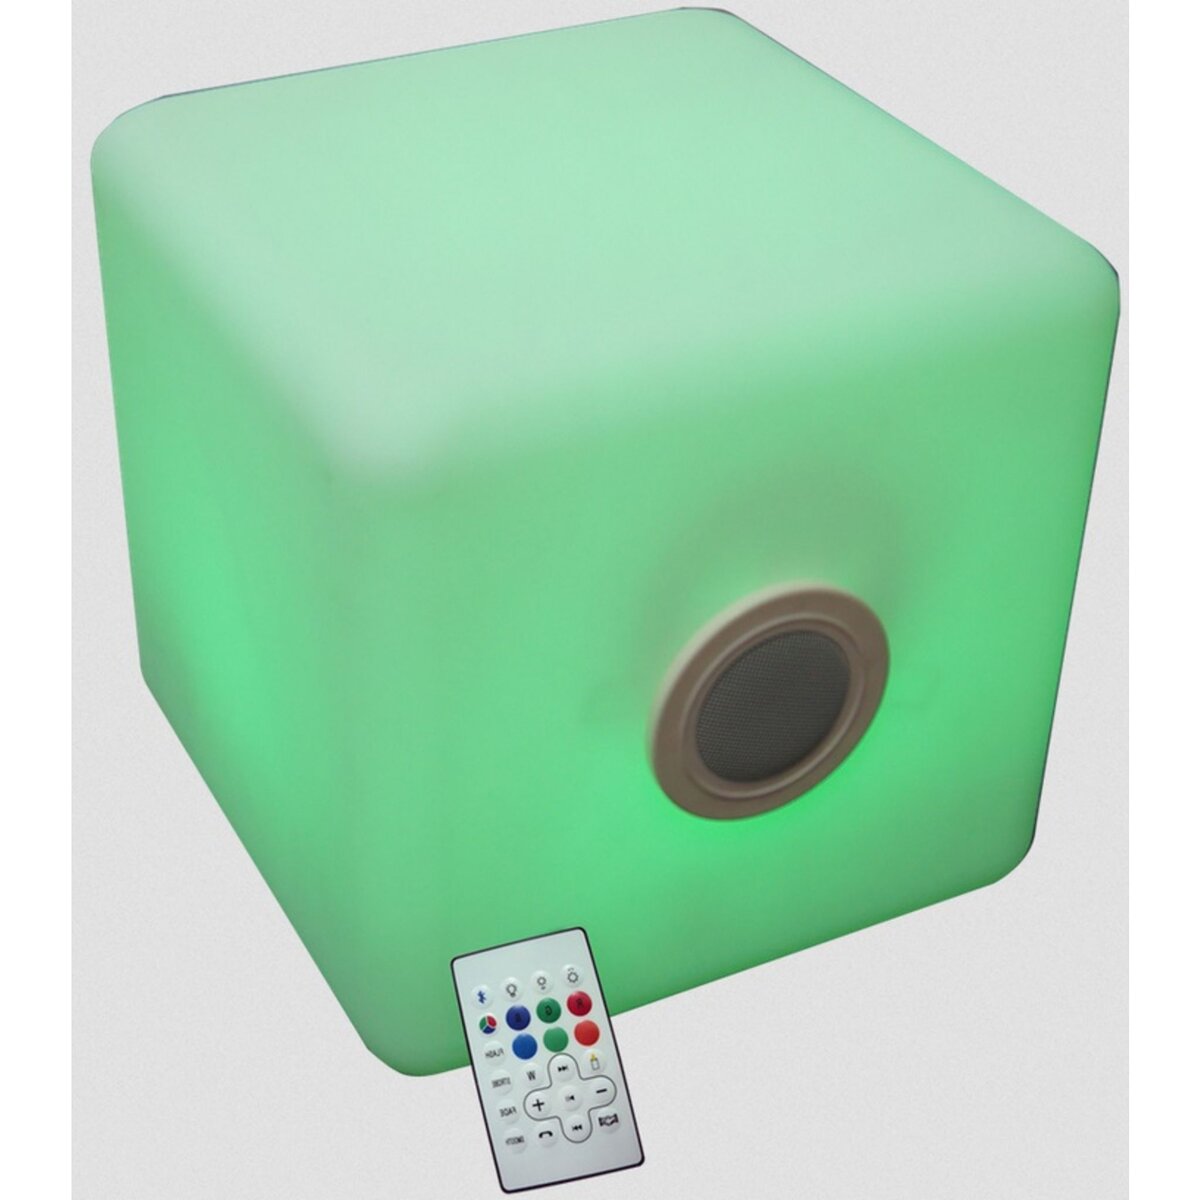 IBIZA SOUND Cube led à couleurs changeantes 35cm - led cube 3535